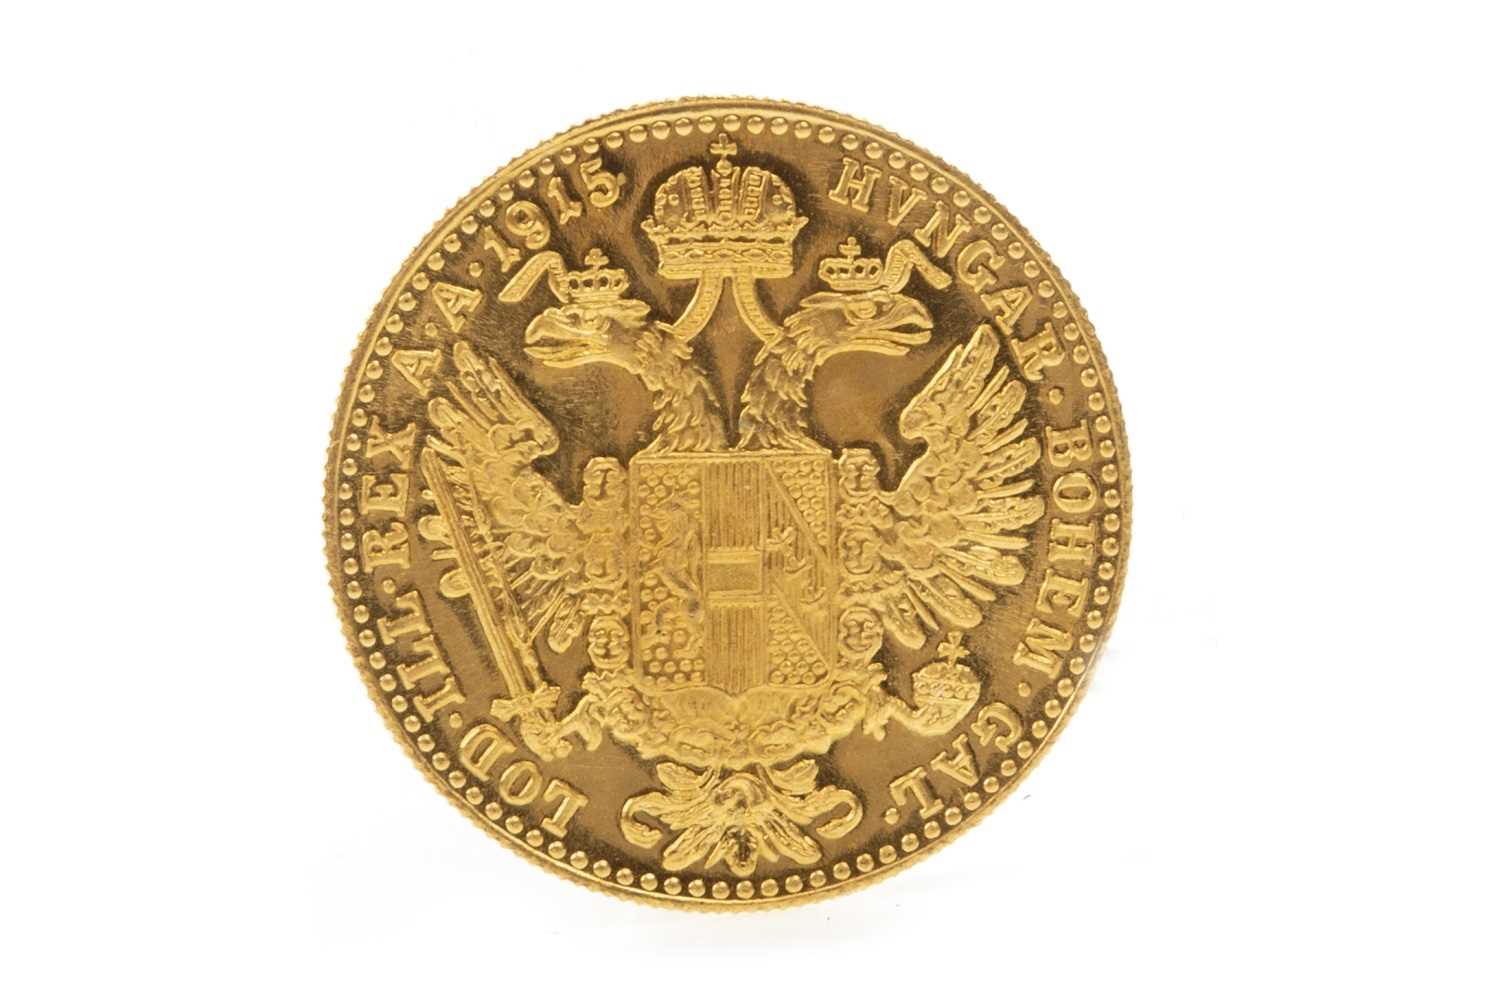 Lot 632 - A GOLD AUSTRIAN COIN, 1915